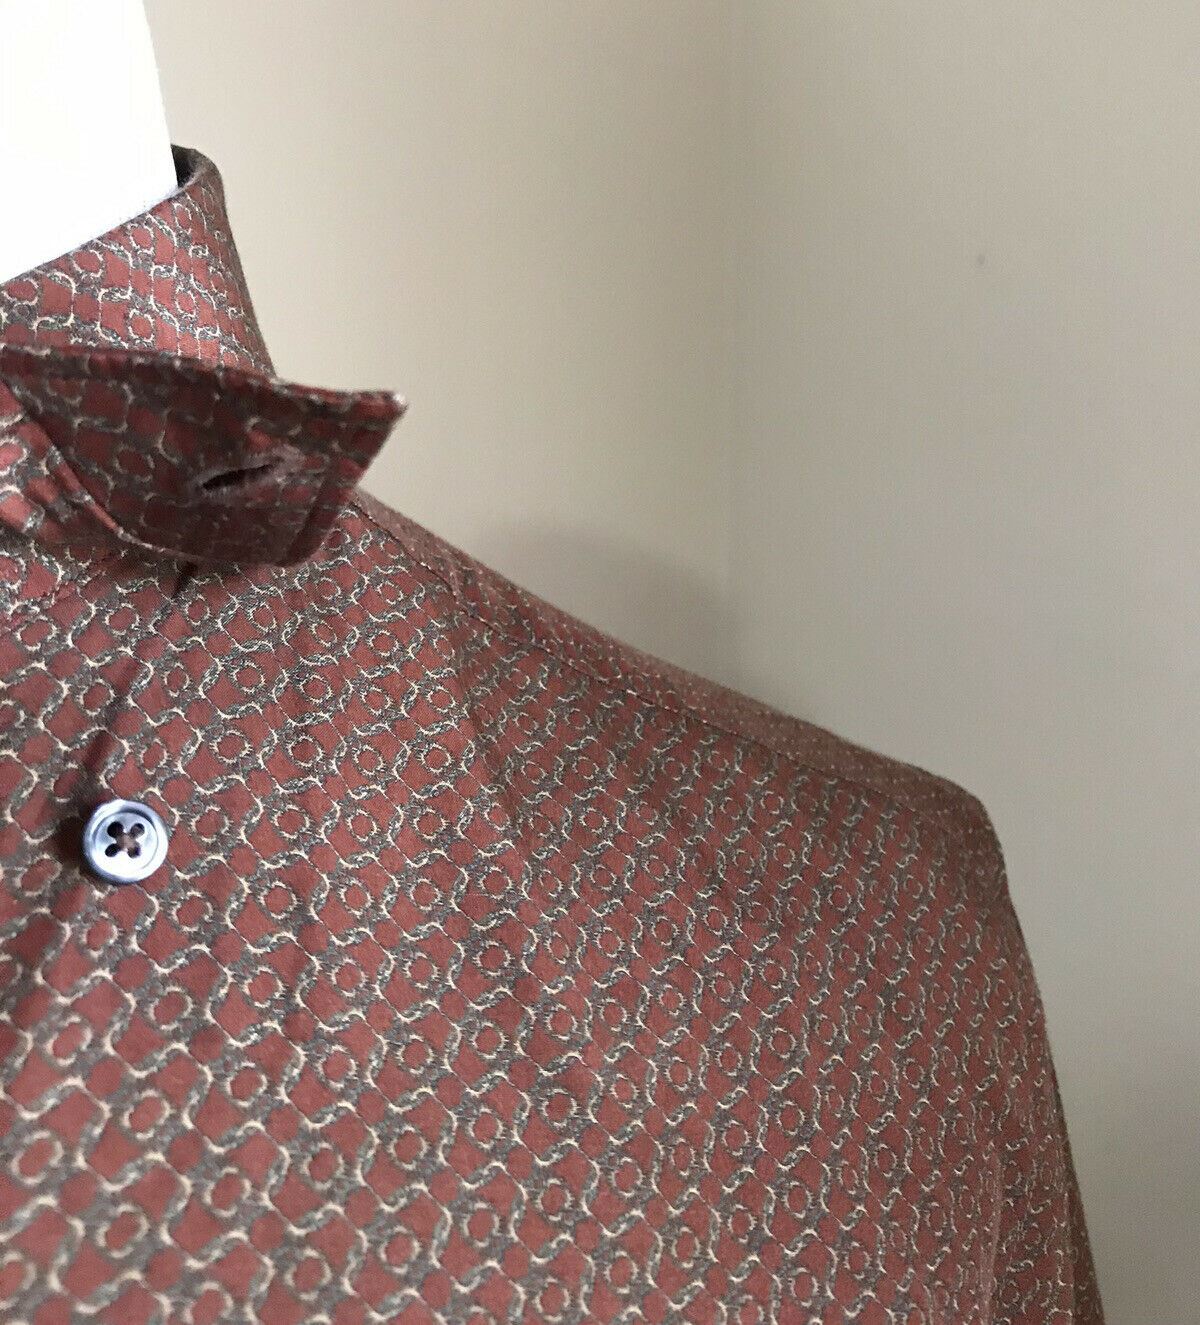 Новая коричневая рубашка с коротким рукавом Ermenegildo Zegna за 495 долларов, размер L